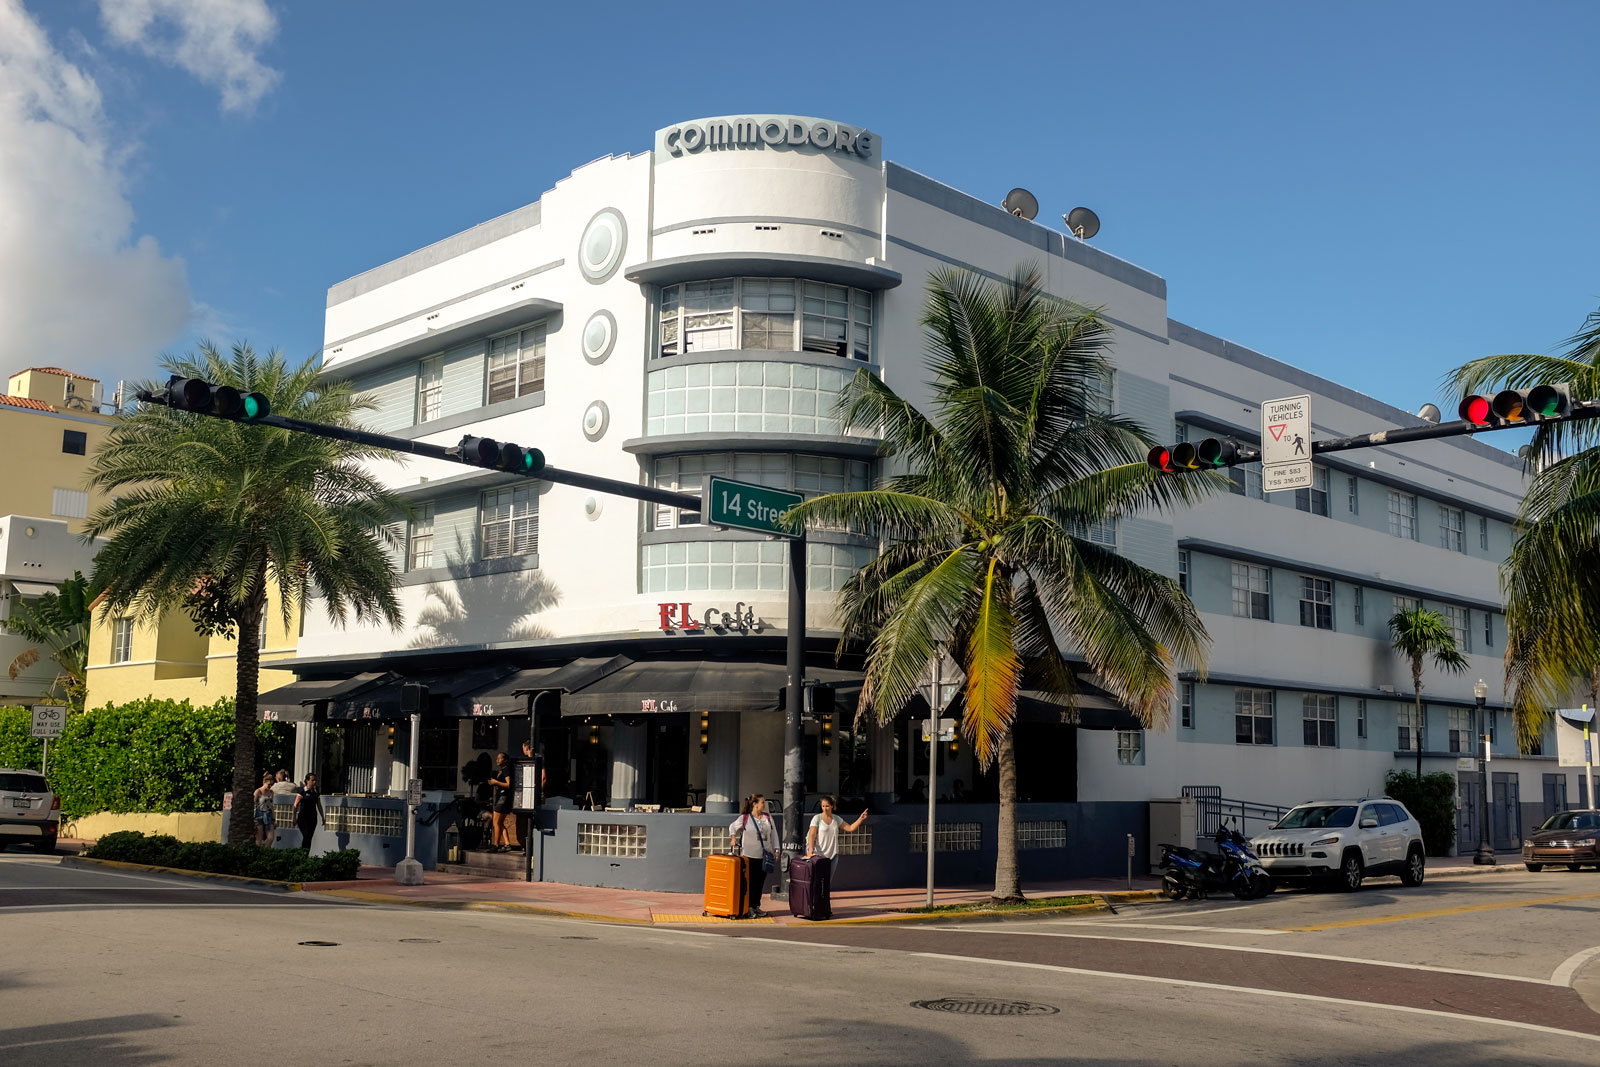 The Commodore Building in Miami Beach